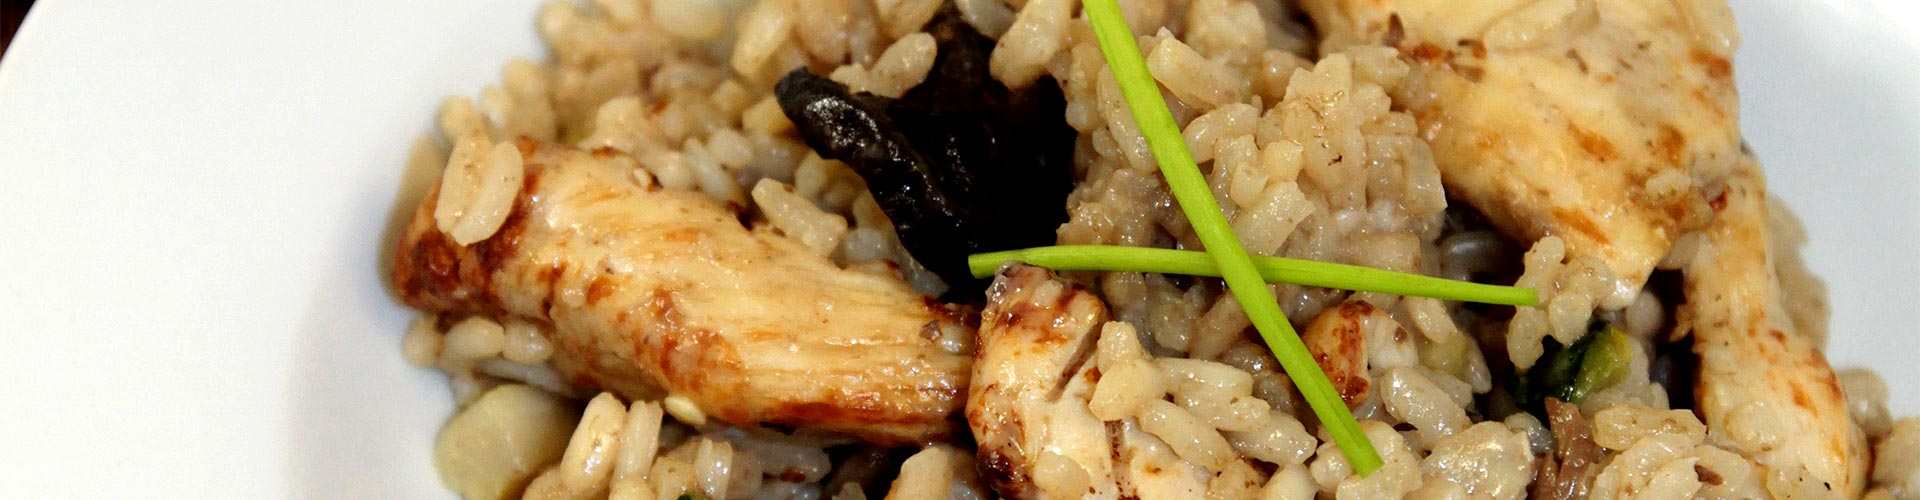 ¿Dónde comer risotto en Alcorcón?